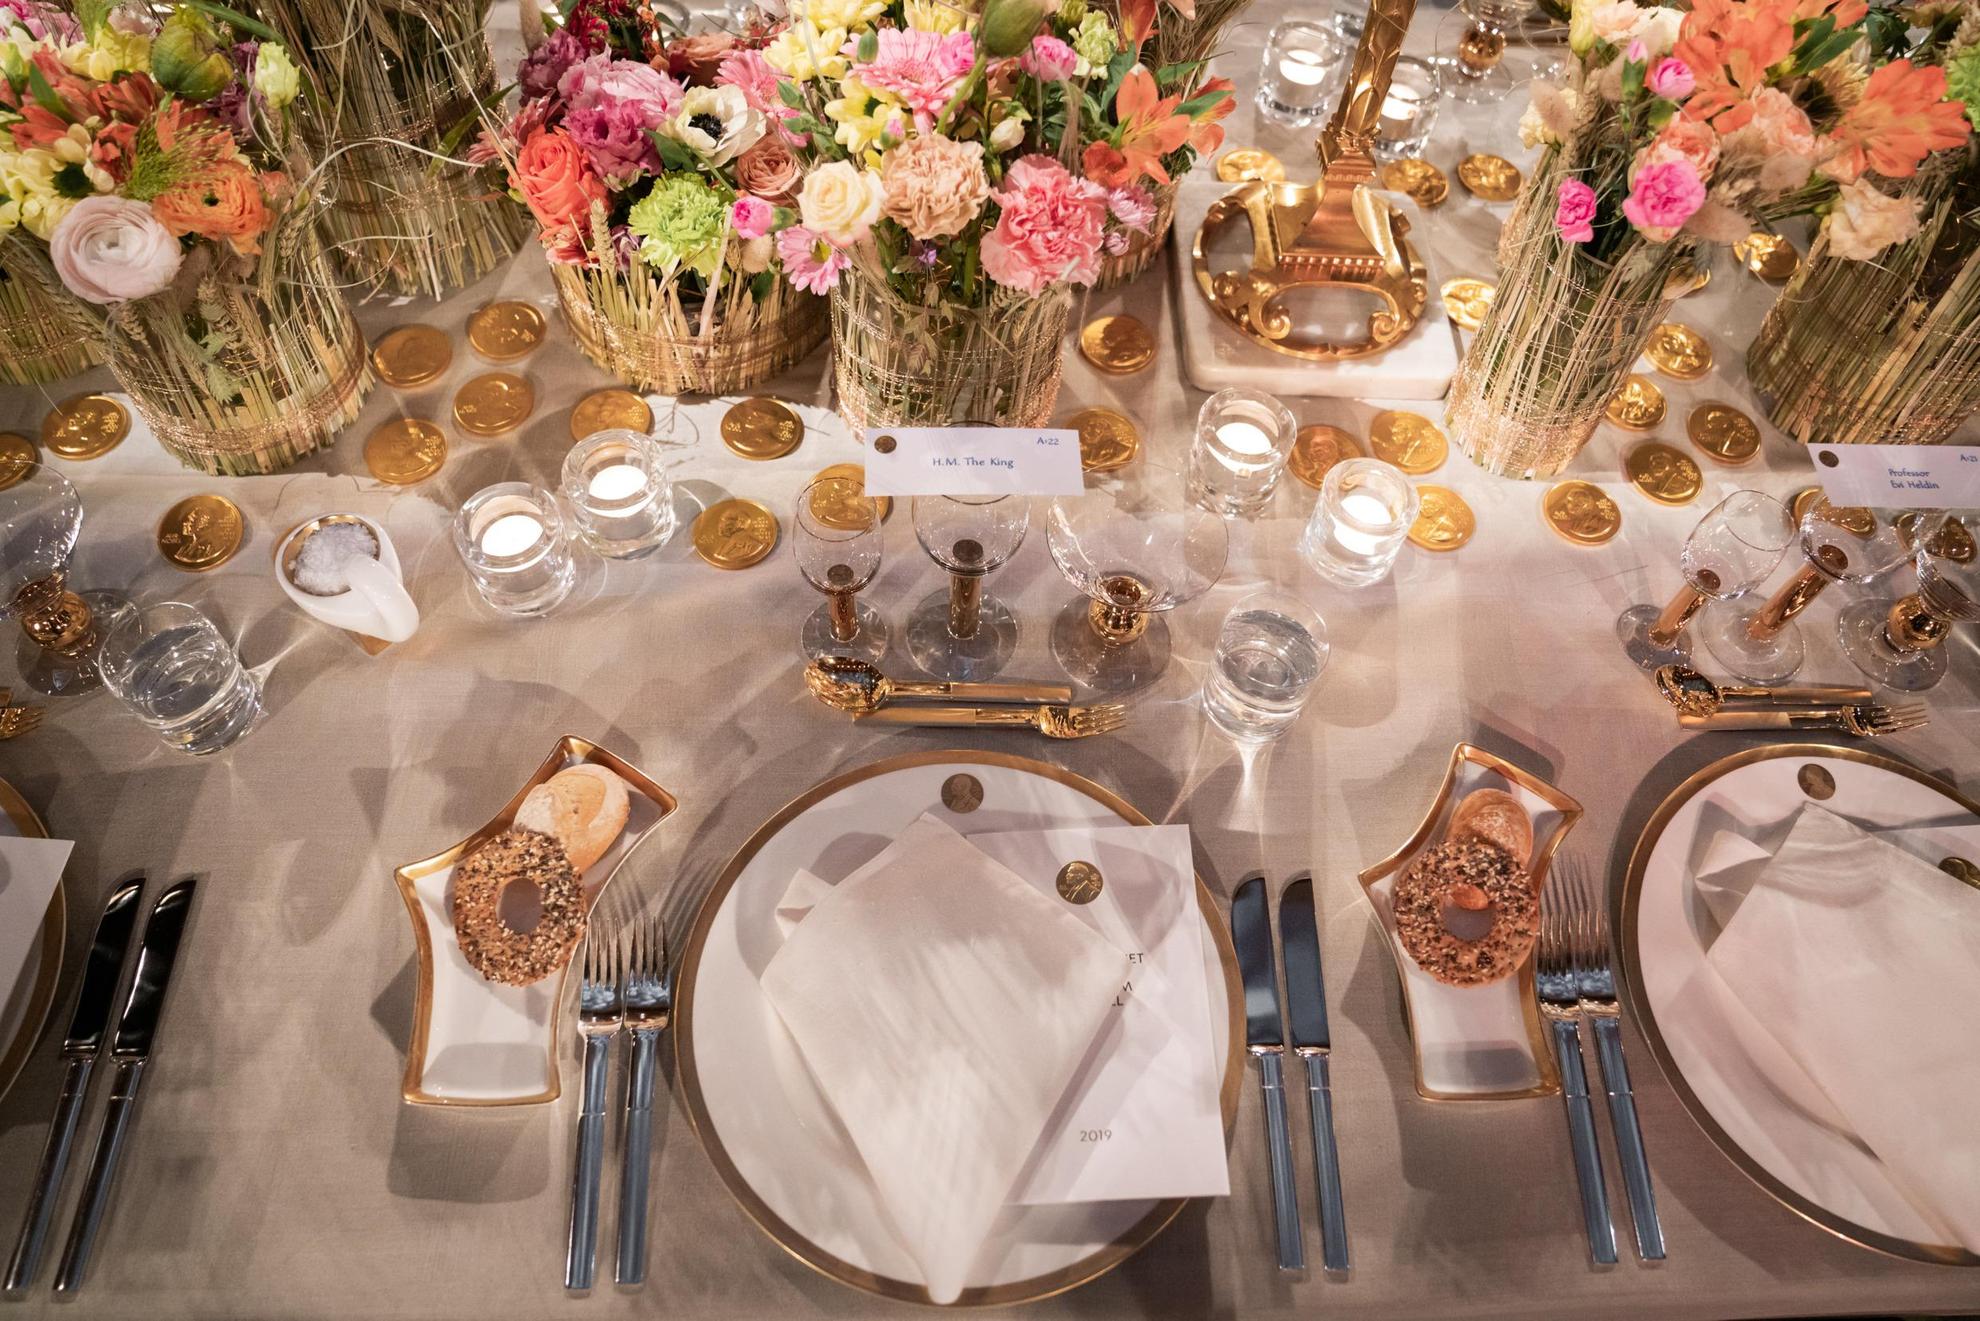 Ein Geschirr in Weiß mit goldenen Details wird auf einem Tisch mit einer weißen Tischdecke gedeckt. In der Mitte des Tisches stehen bunte Blumen in Vasen.